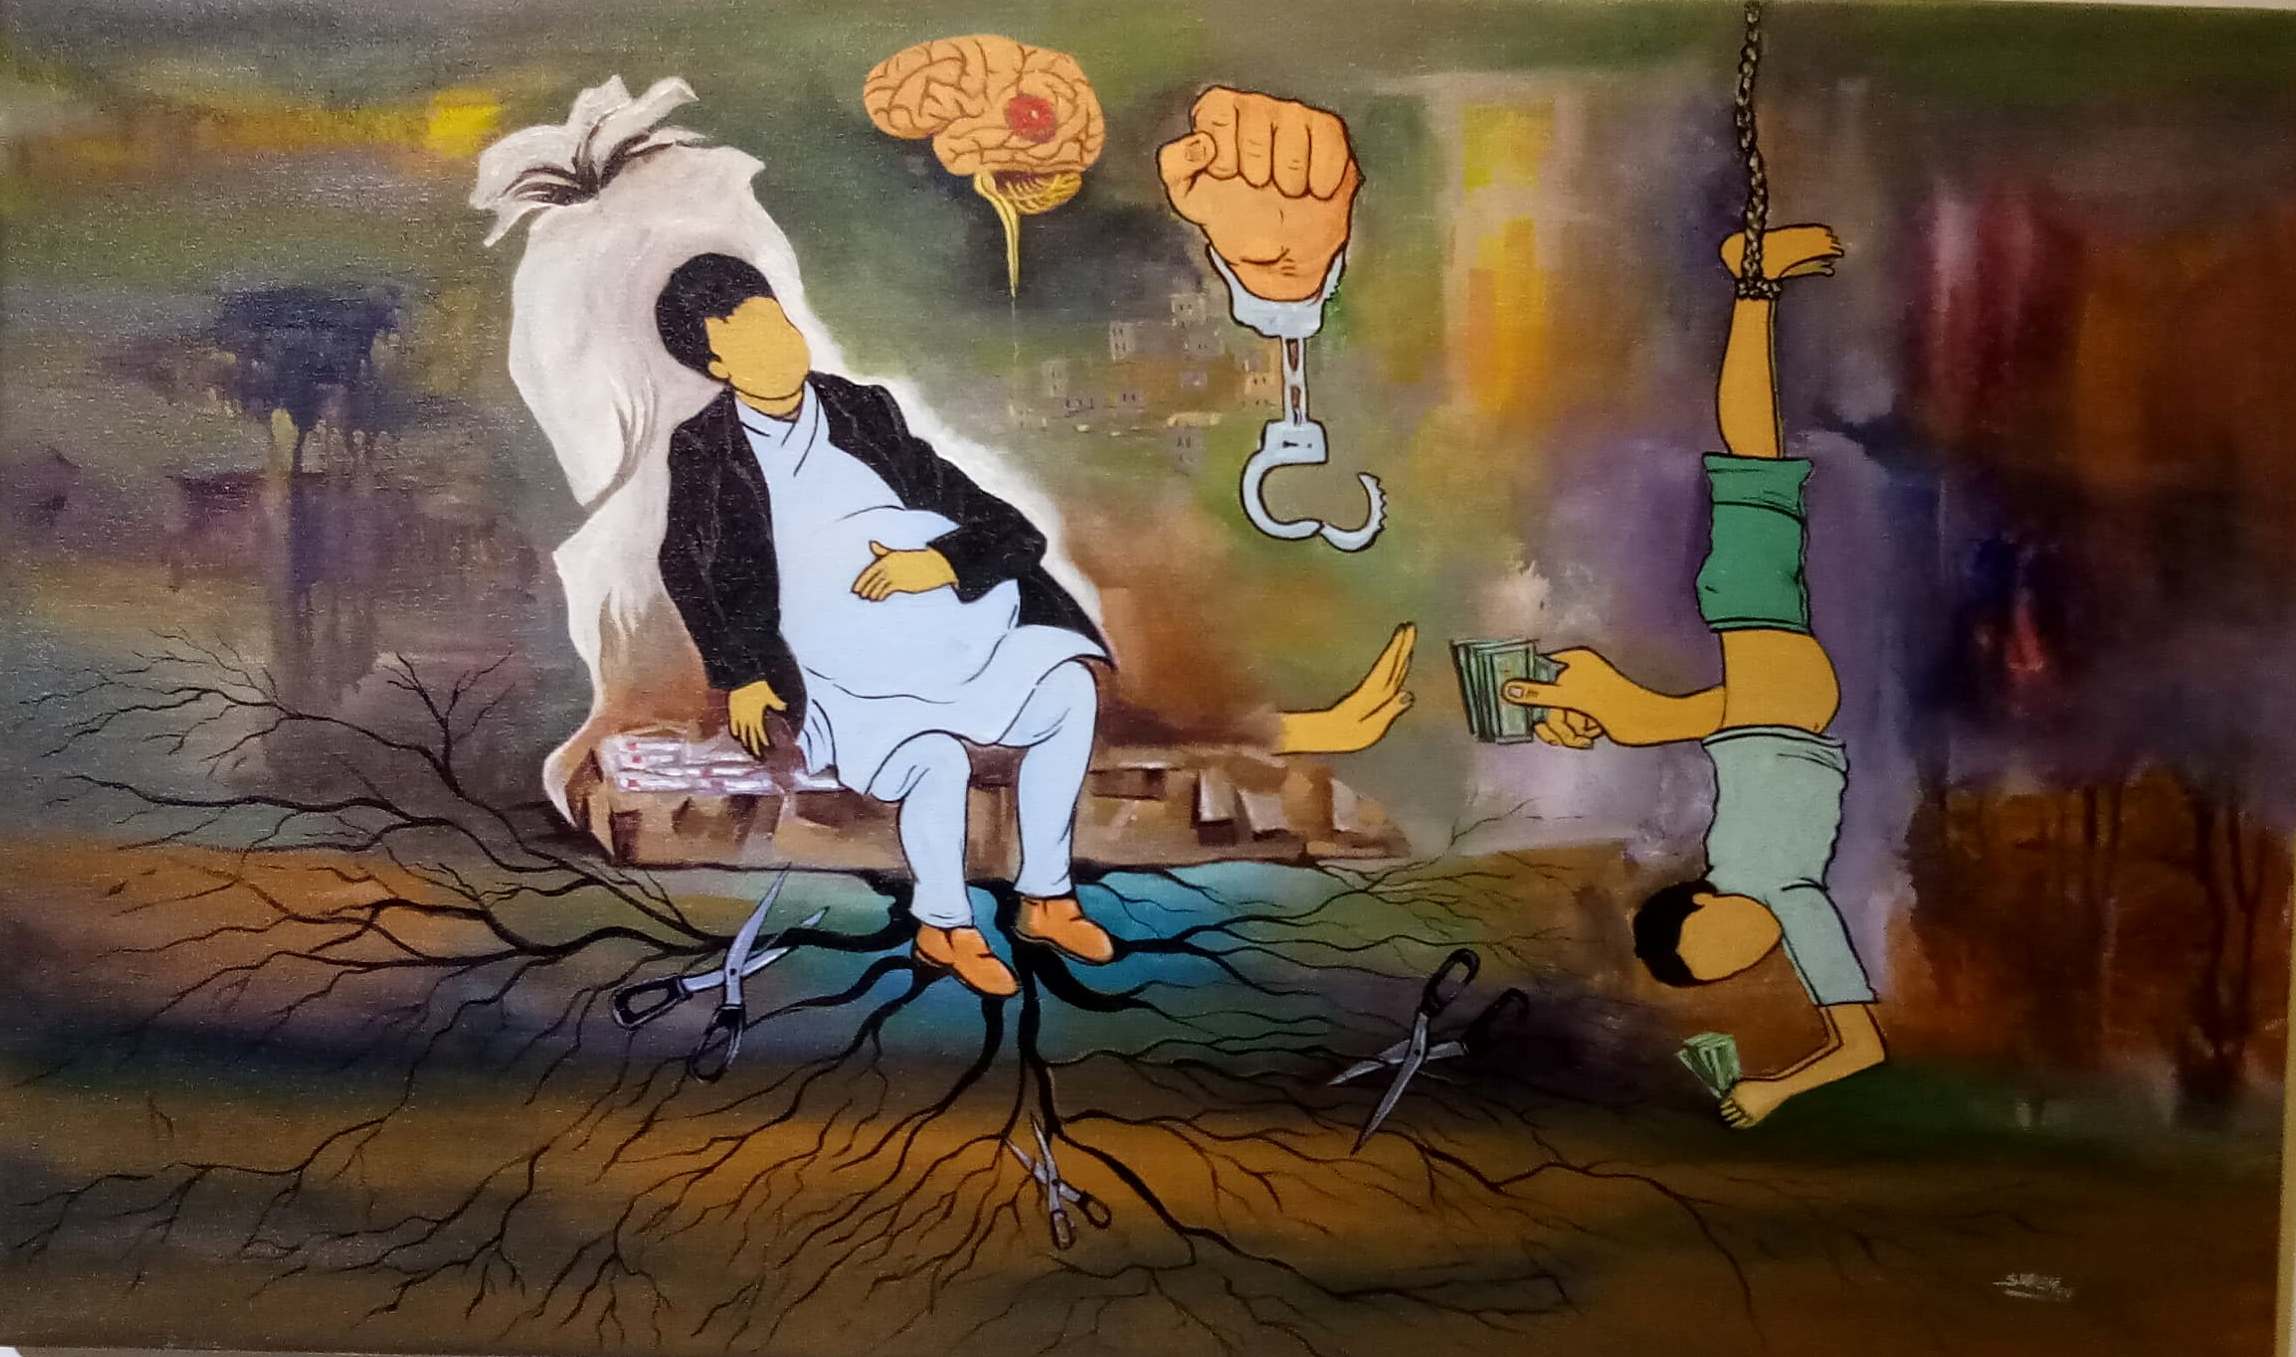 सकियो भ्रष्टाचार विरुद्धको चित्रकला प्रदर्शनी